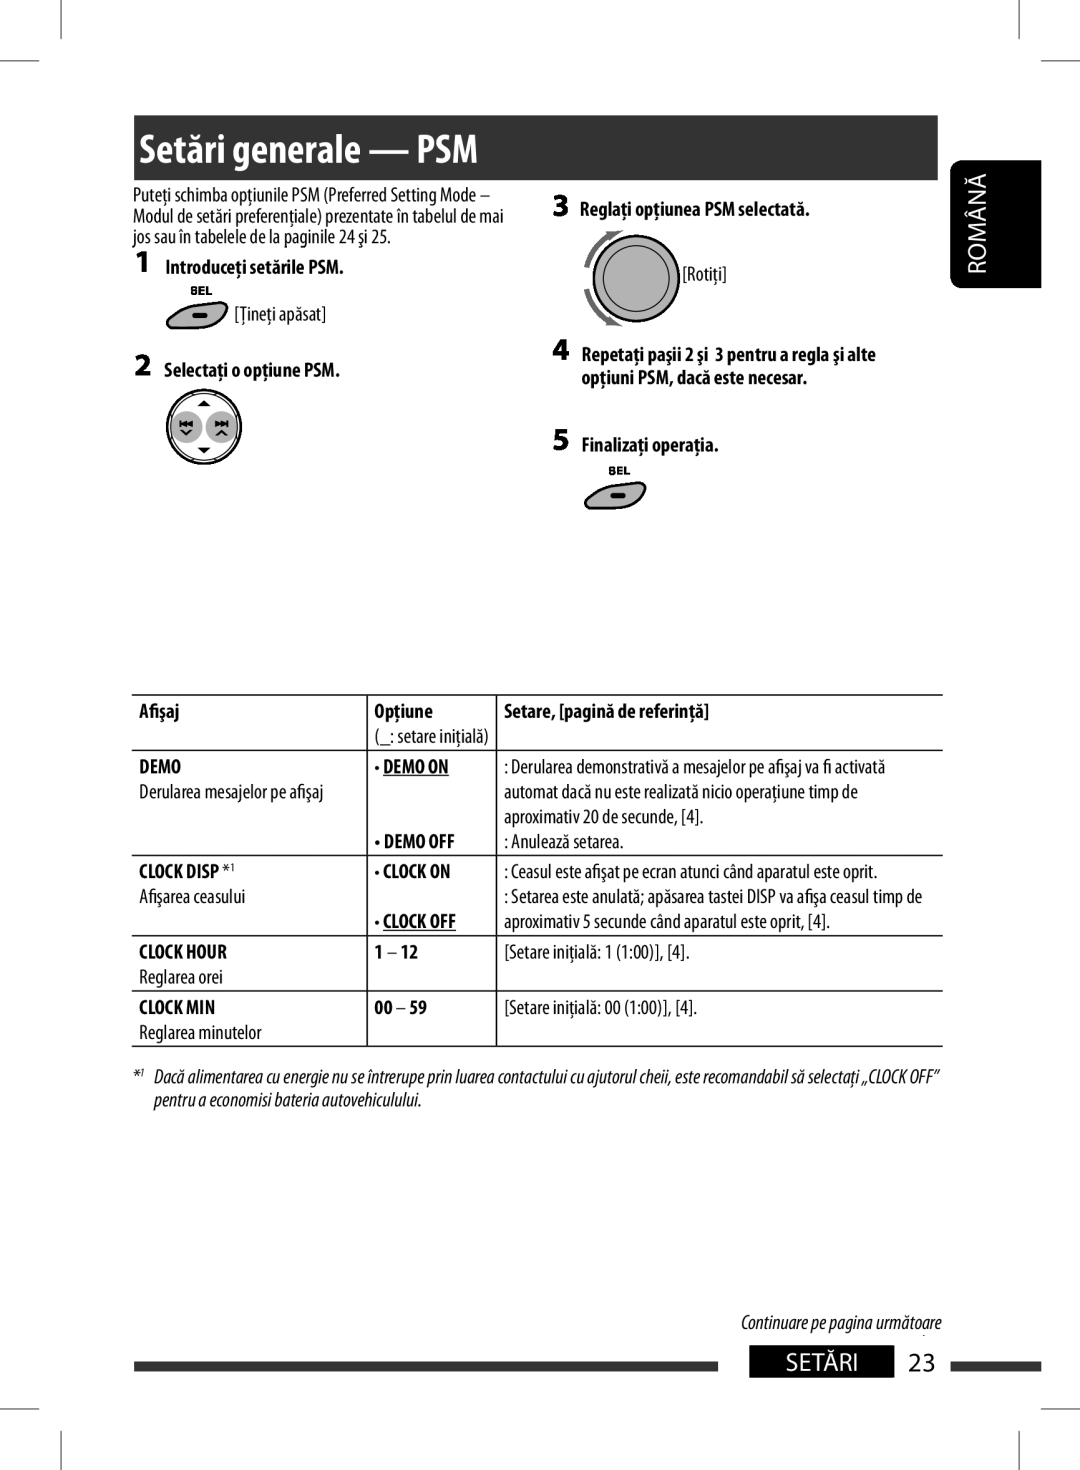 JVC KD-BT11 manual Indications, reference page, Demo Off, Română, Setări 